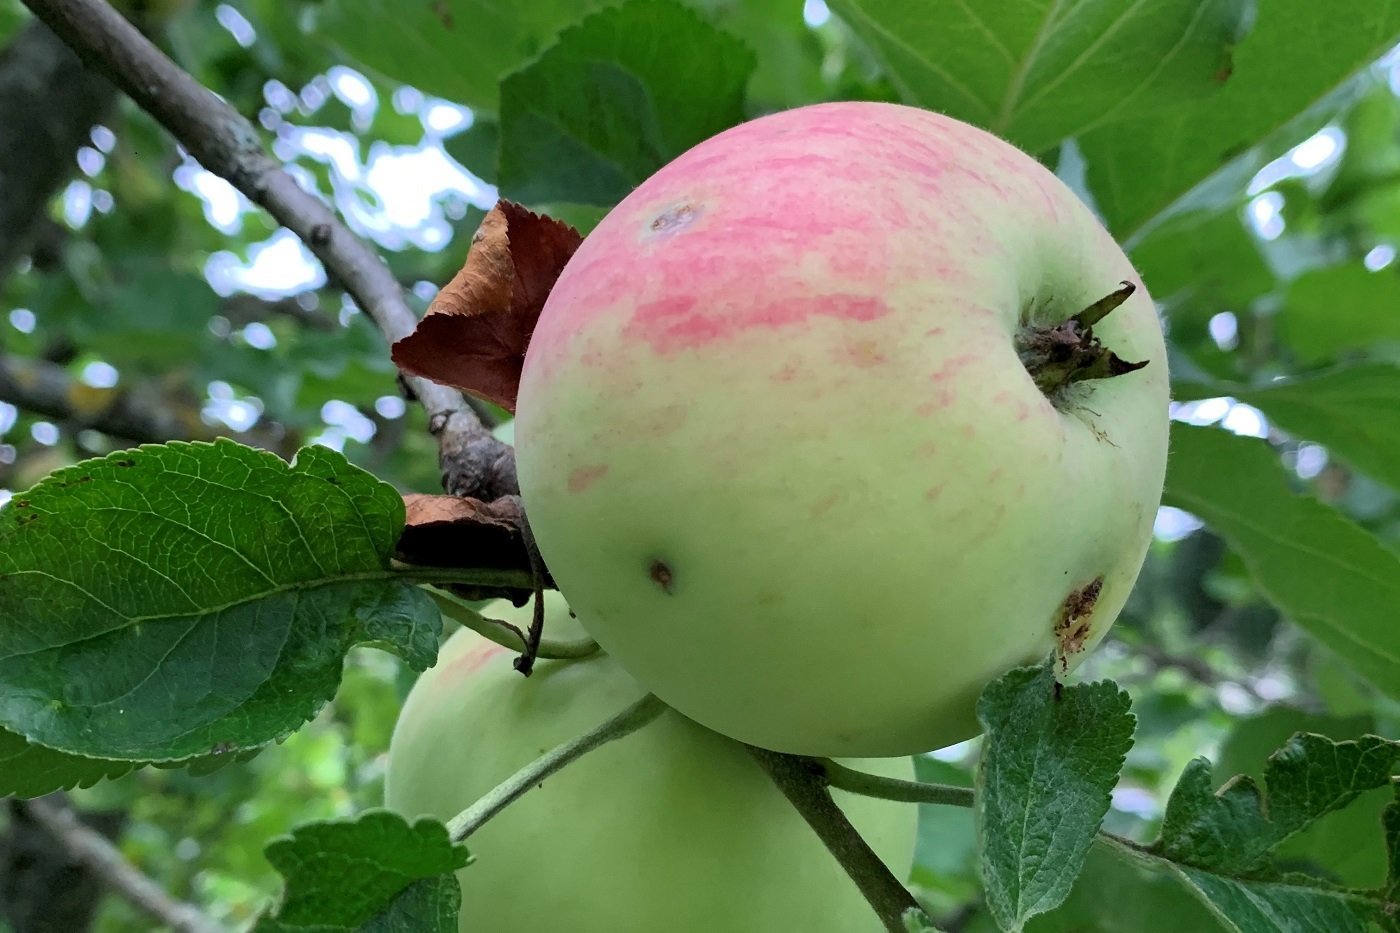 Äpfel mit Schalenfehlern schmecken: Oekolandbau